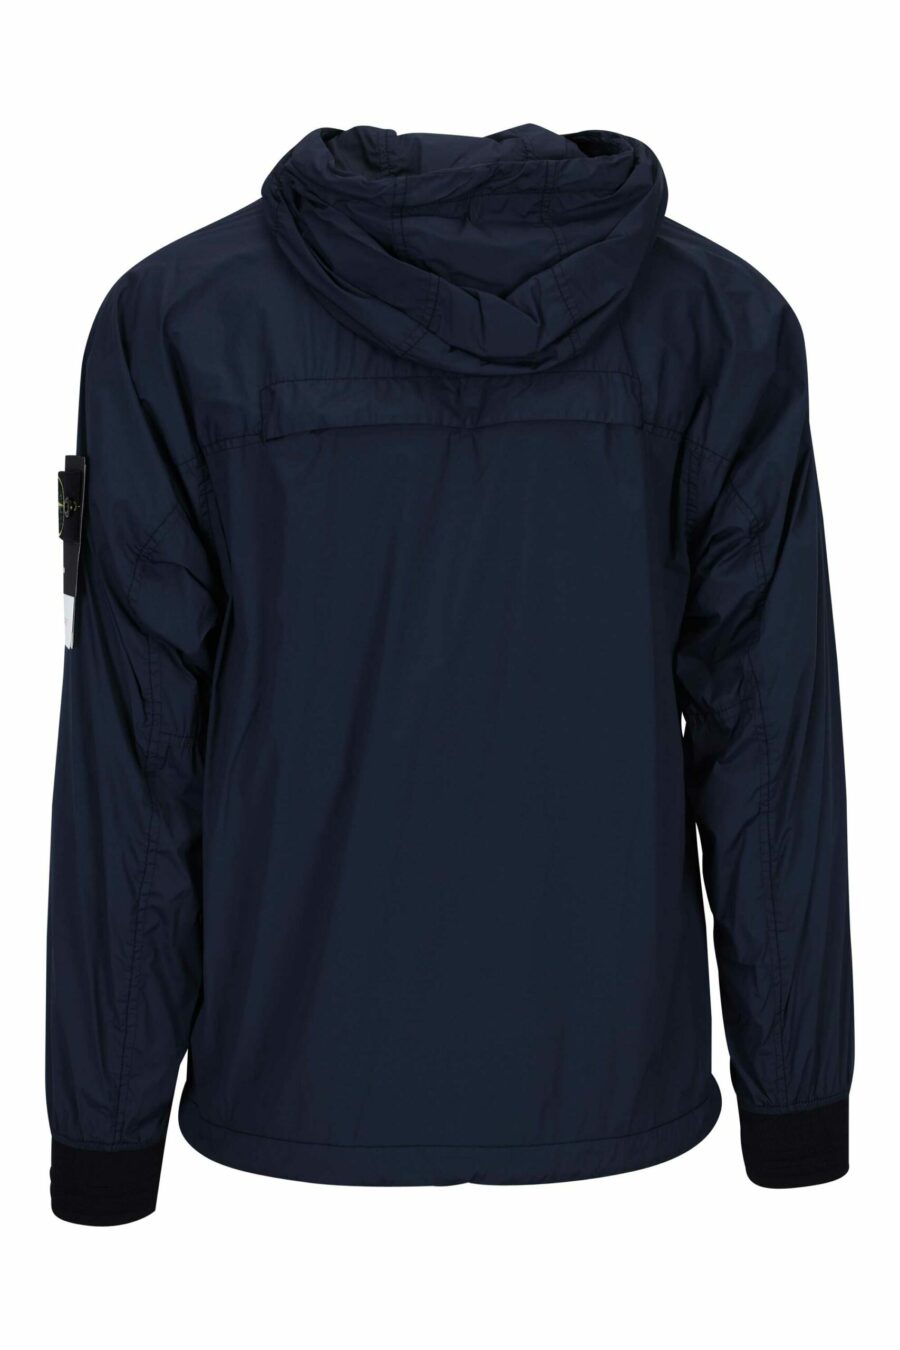 Veste bleue foncée avec capuche et logo boussole - 8052572901157 2 à l'échelle